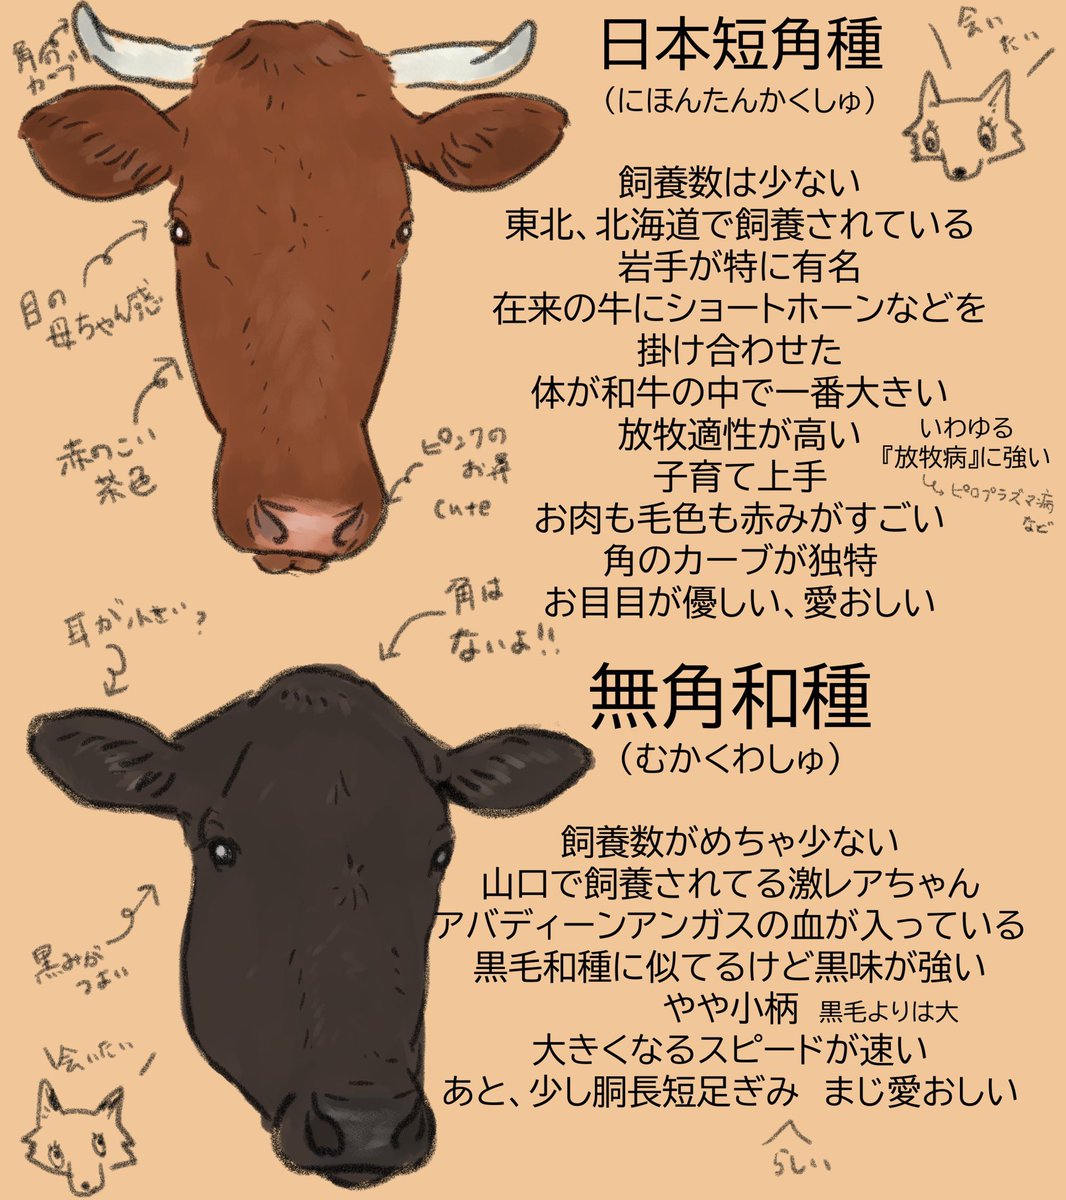 和牛4品種の話🐂

年賀状のイラスト、乳牛だけじゃなくて和牛はどうですか?

日本の宝、和牛って『黒毛和牛』だけじゃ無いって知って欲しいな✨

和牛には色んな魅力詰まってます
#牛 #牛イラスト #和牛 